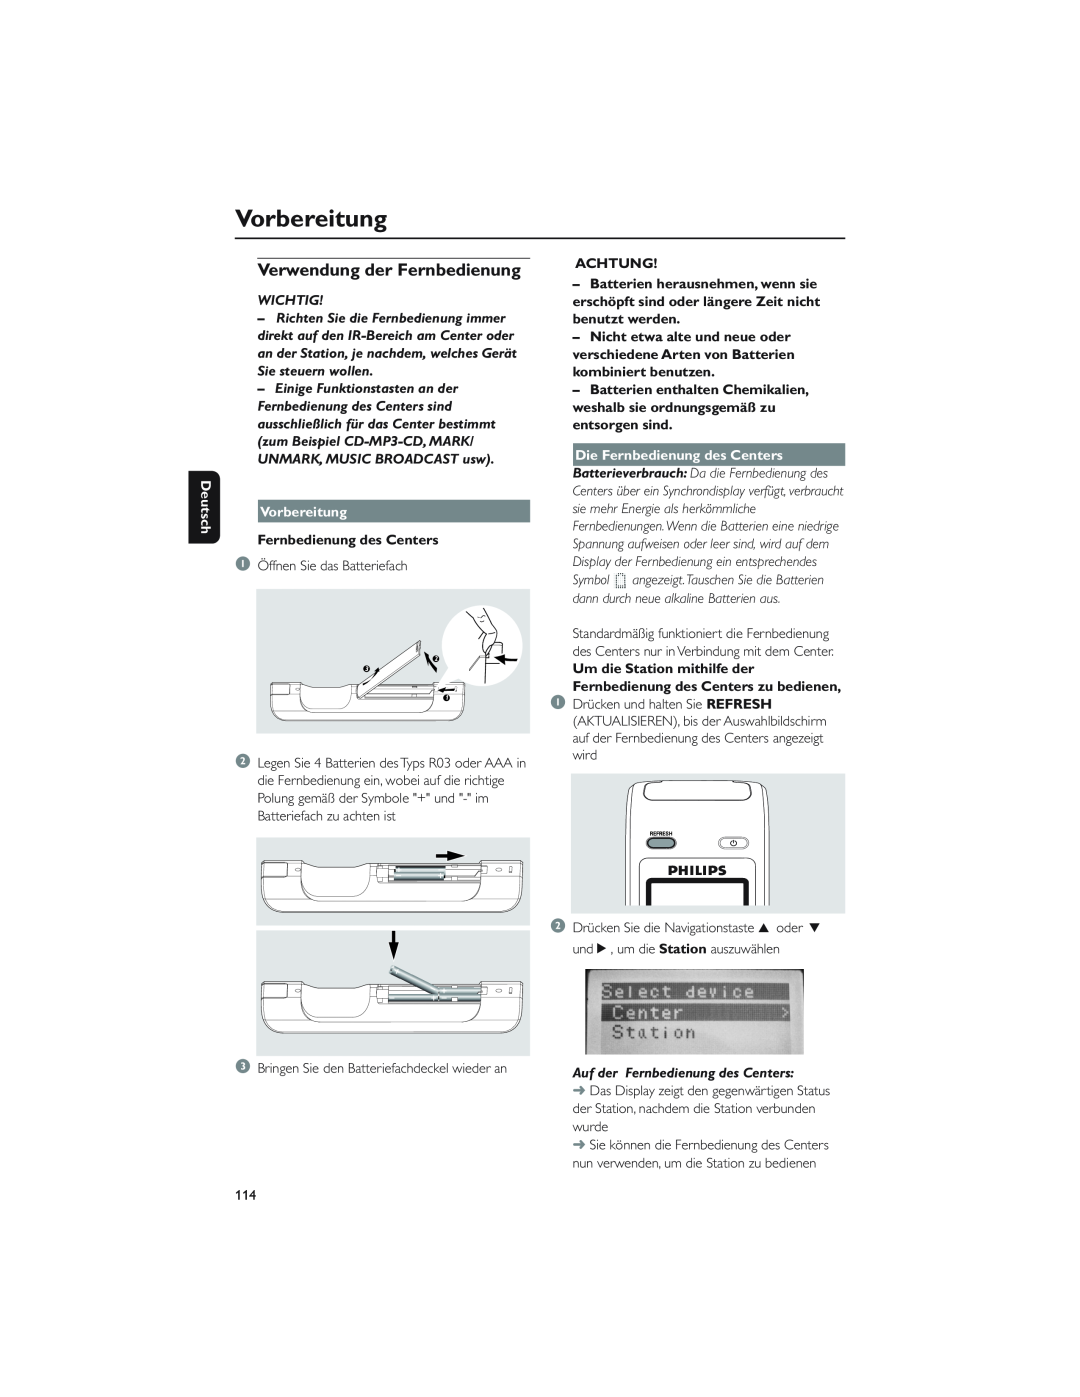 Philips WAC5 user manual Vorbereitung, Verwendung der Fernbedienung, Deutsch, Wichtig, Fernbedienung des Centers, Achtung 